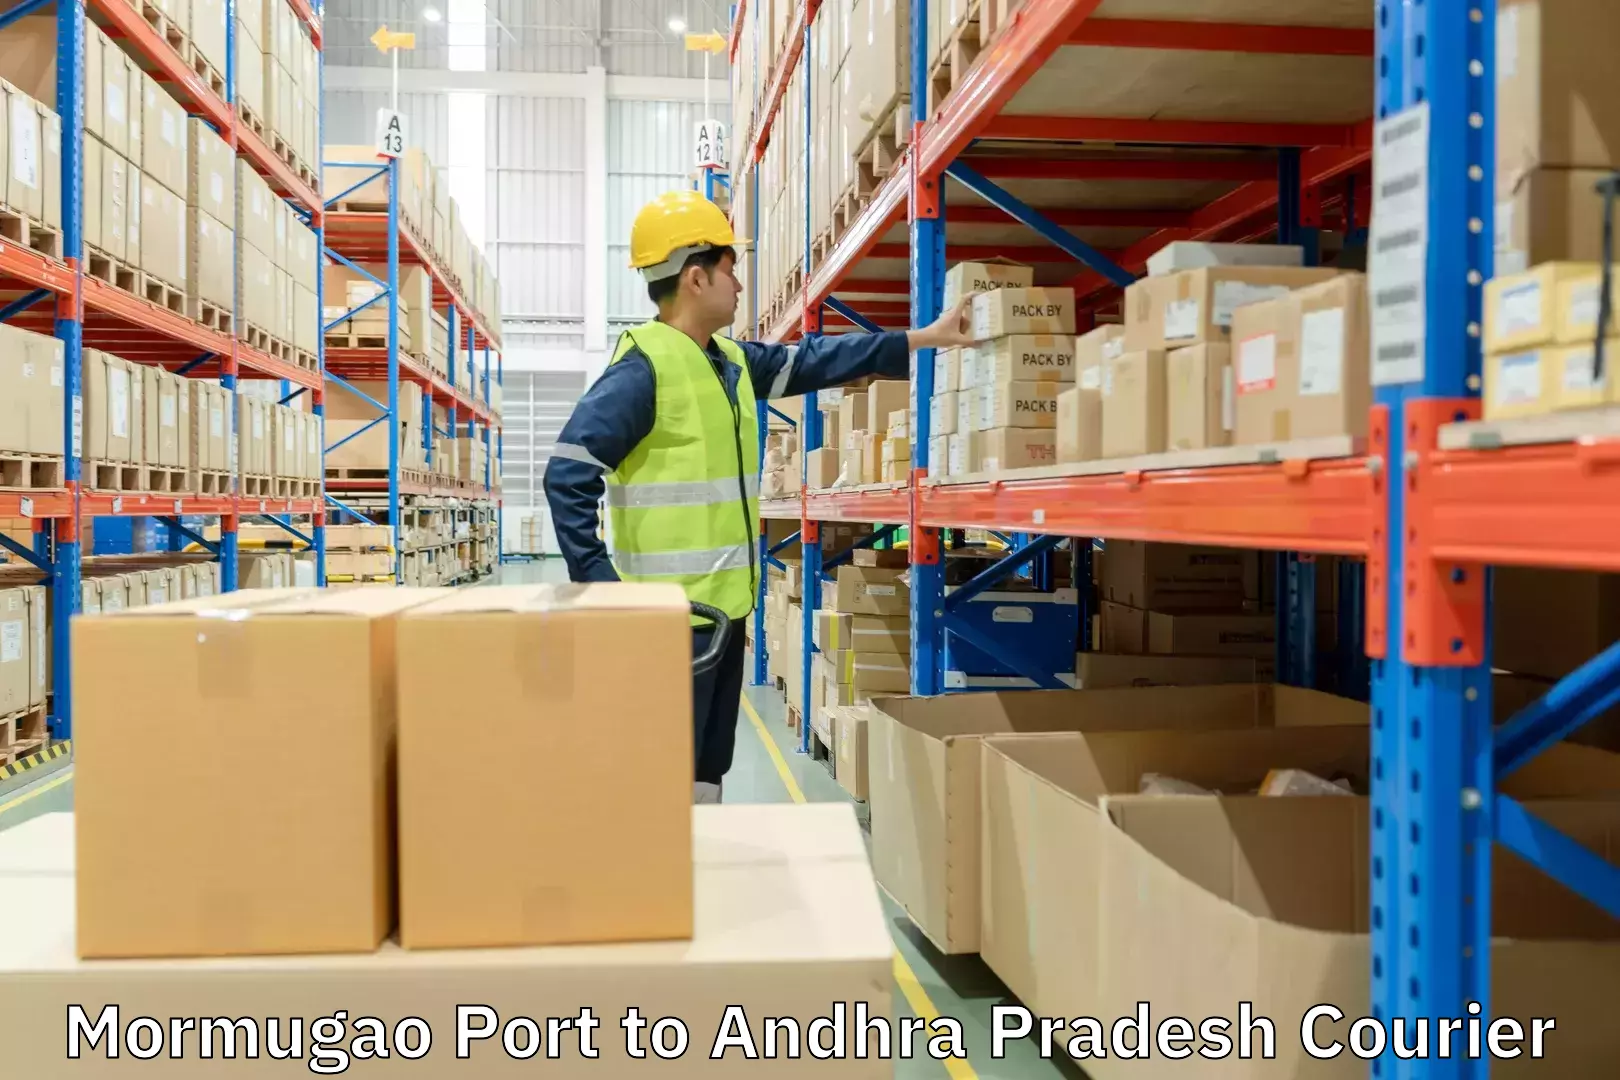 Reliable courier services Mormugao Port to Andhra Pradesh